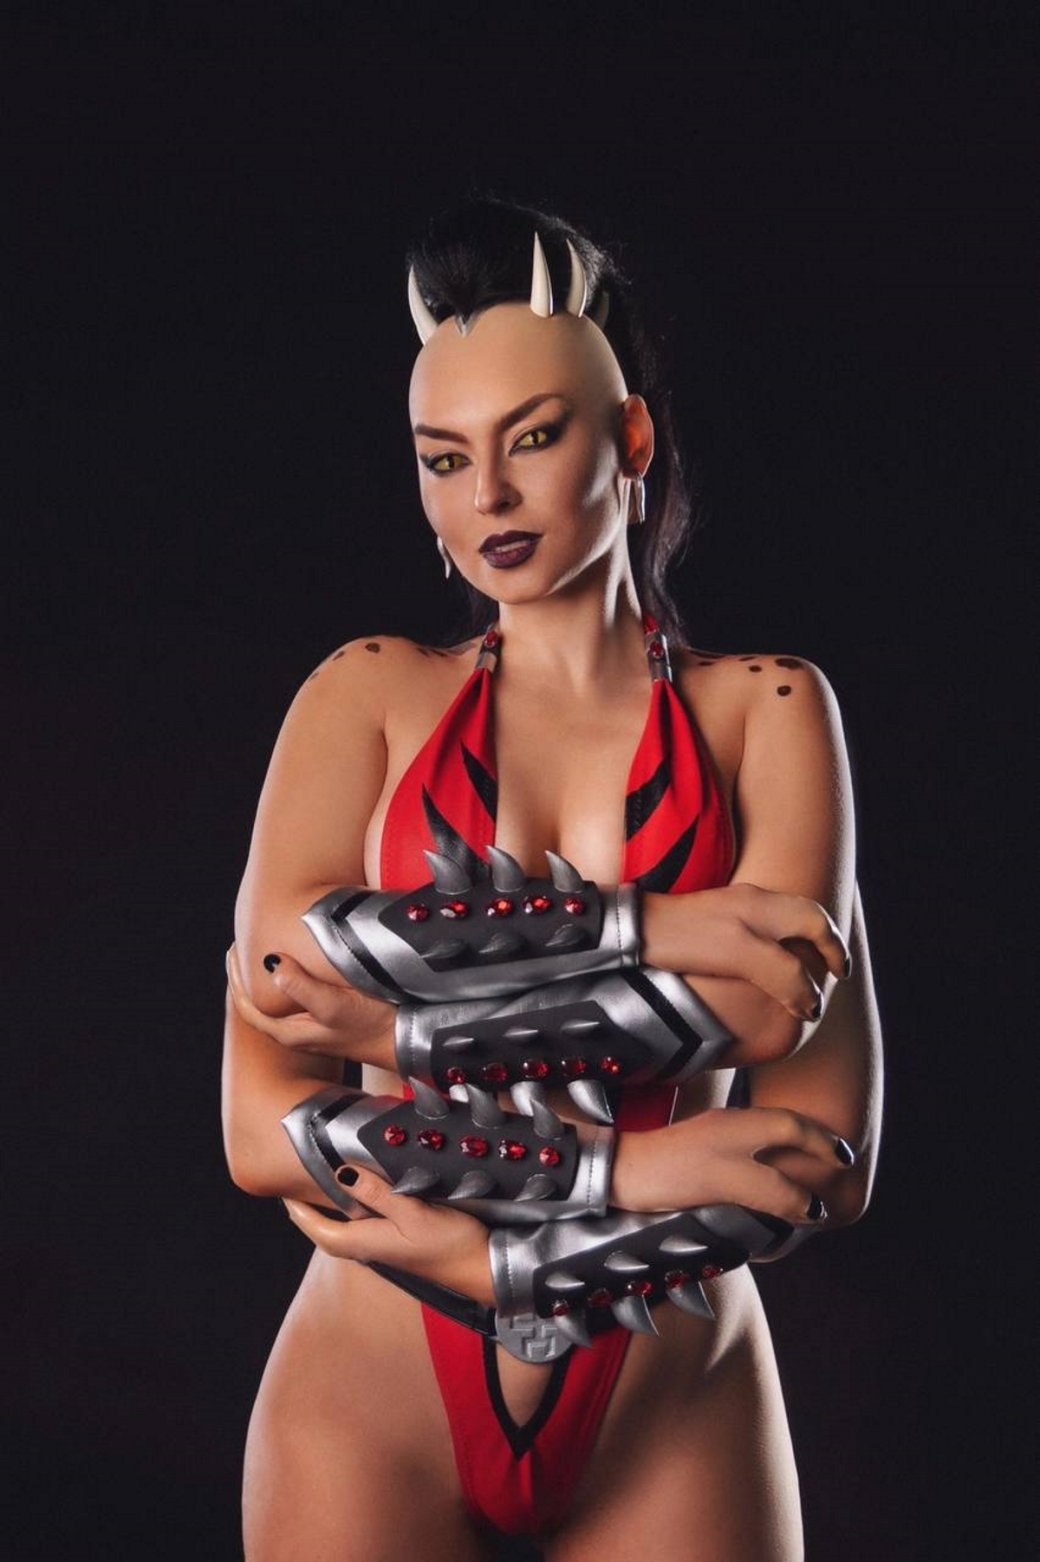 Галерея Косплеерша примерила роль мощной Шивы из франшизы Mortal Kombat - 6 фото